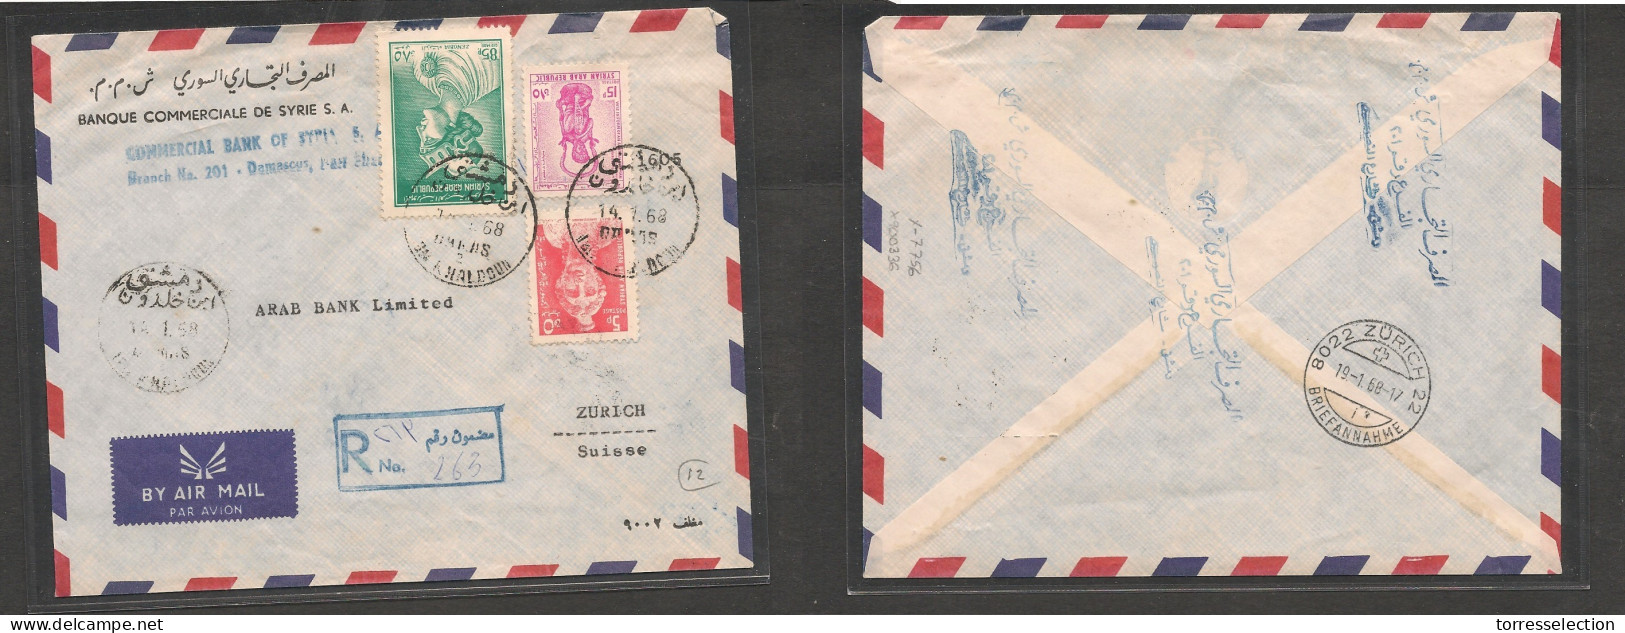 SYRIA. Syria Cover - 1968 Damascus To Switz Zurich Registr Air Mult Fkd Env Nah Khaldoun, Vf XSALE. - Syrien